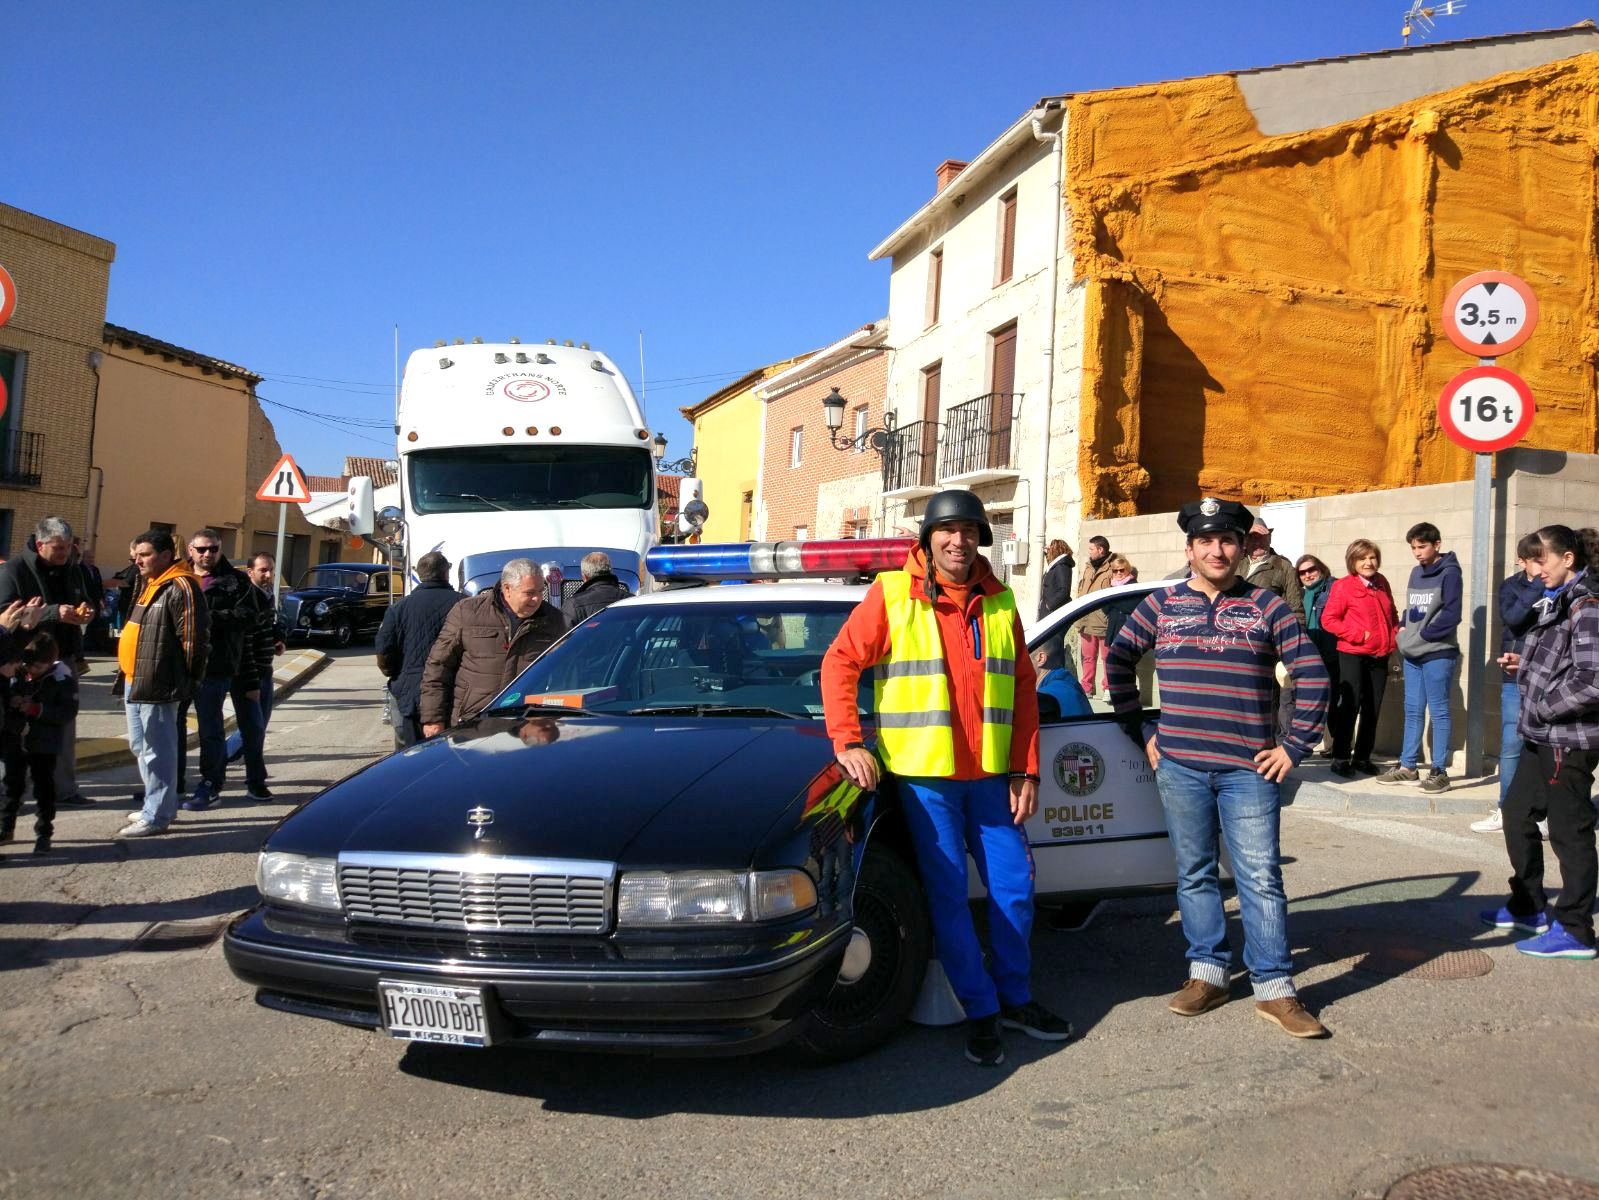 202 vehículos (entre los que se encontraban algunos llamativos tractores y camiones) procedentes de diversos puntos de España, participaron en este exitoso atractivo en las fiestas de San Martín